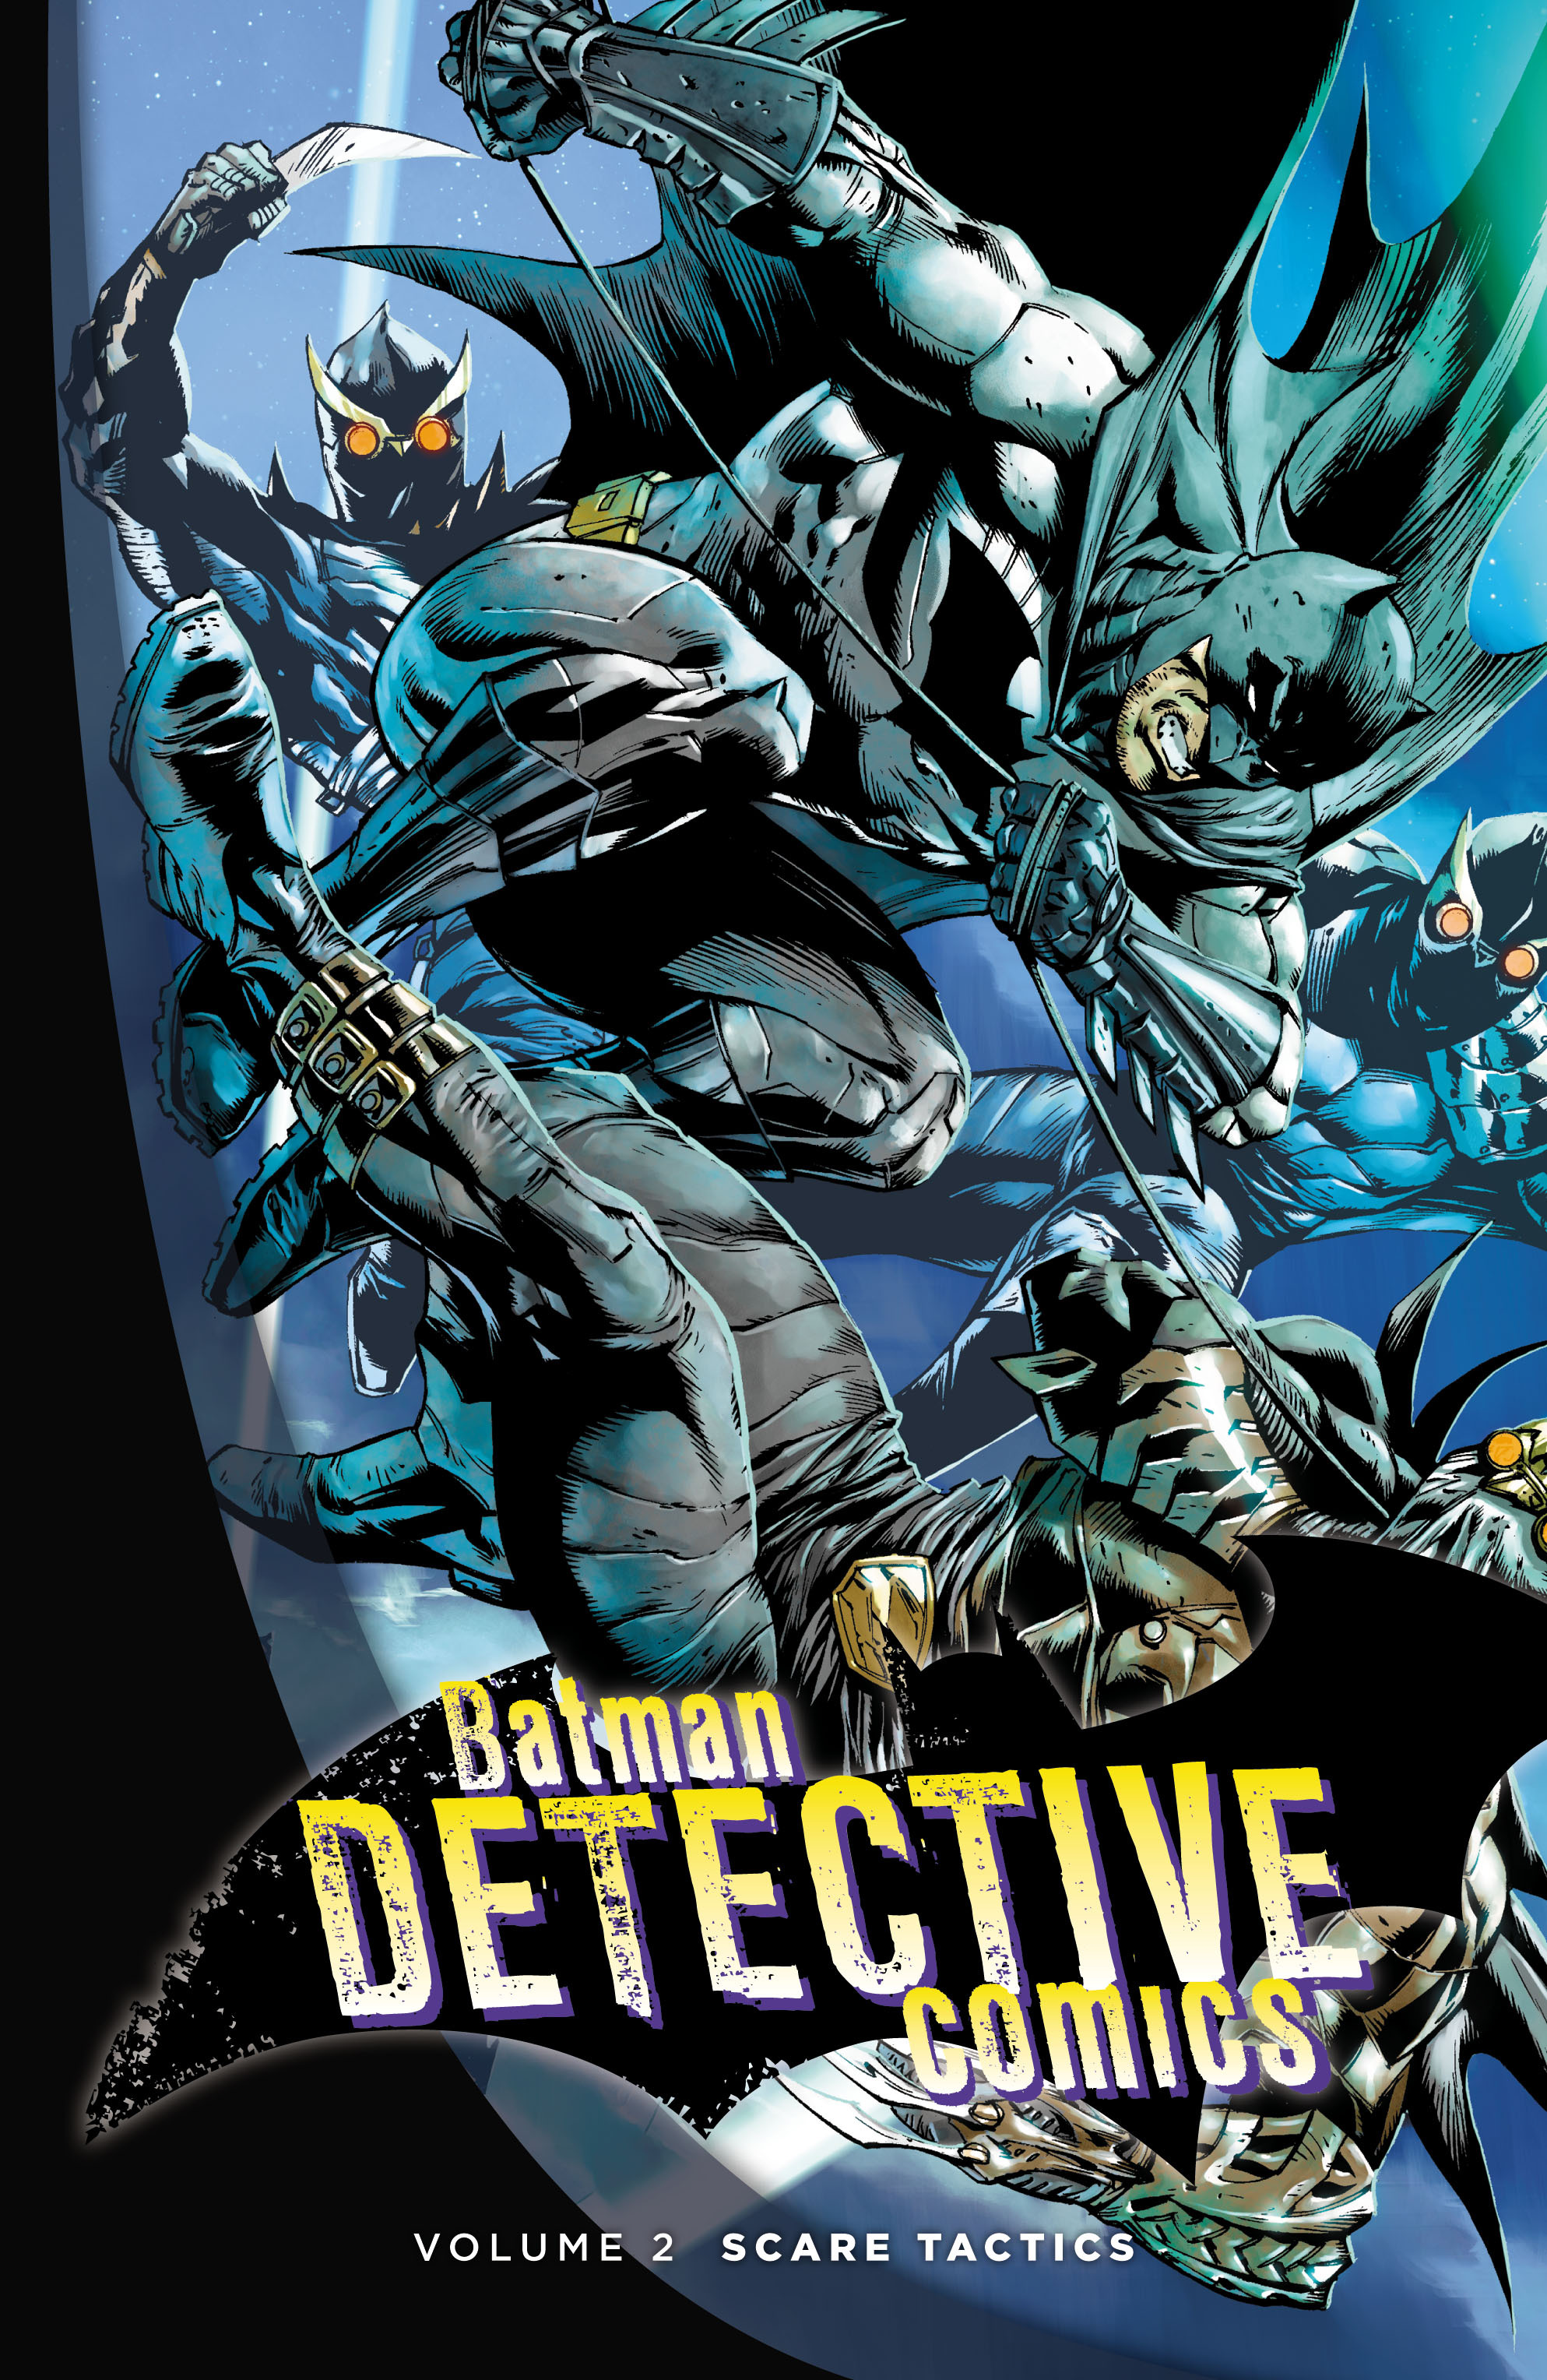 Read online Batman: Detective Comics comic -  Issue # TPB 2 - 2